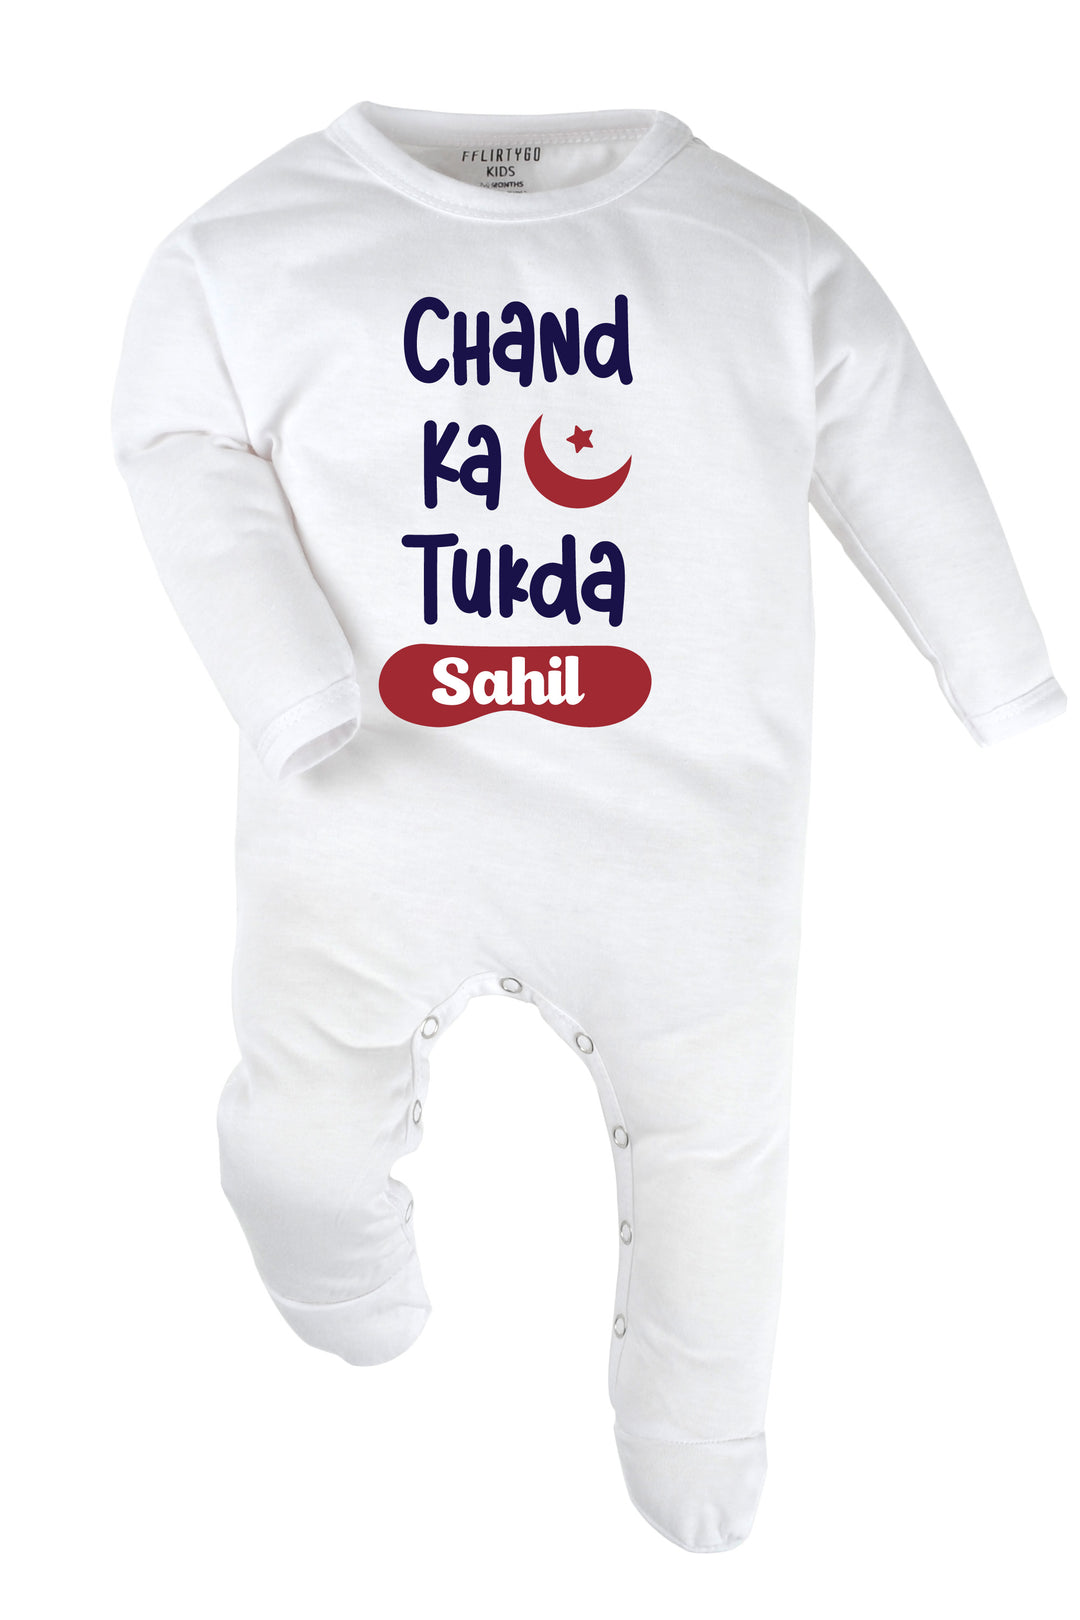 Chand Ka Tukda Baby Romper | Onesies w/ Custom Name